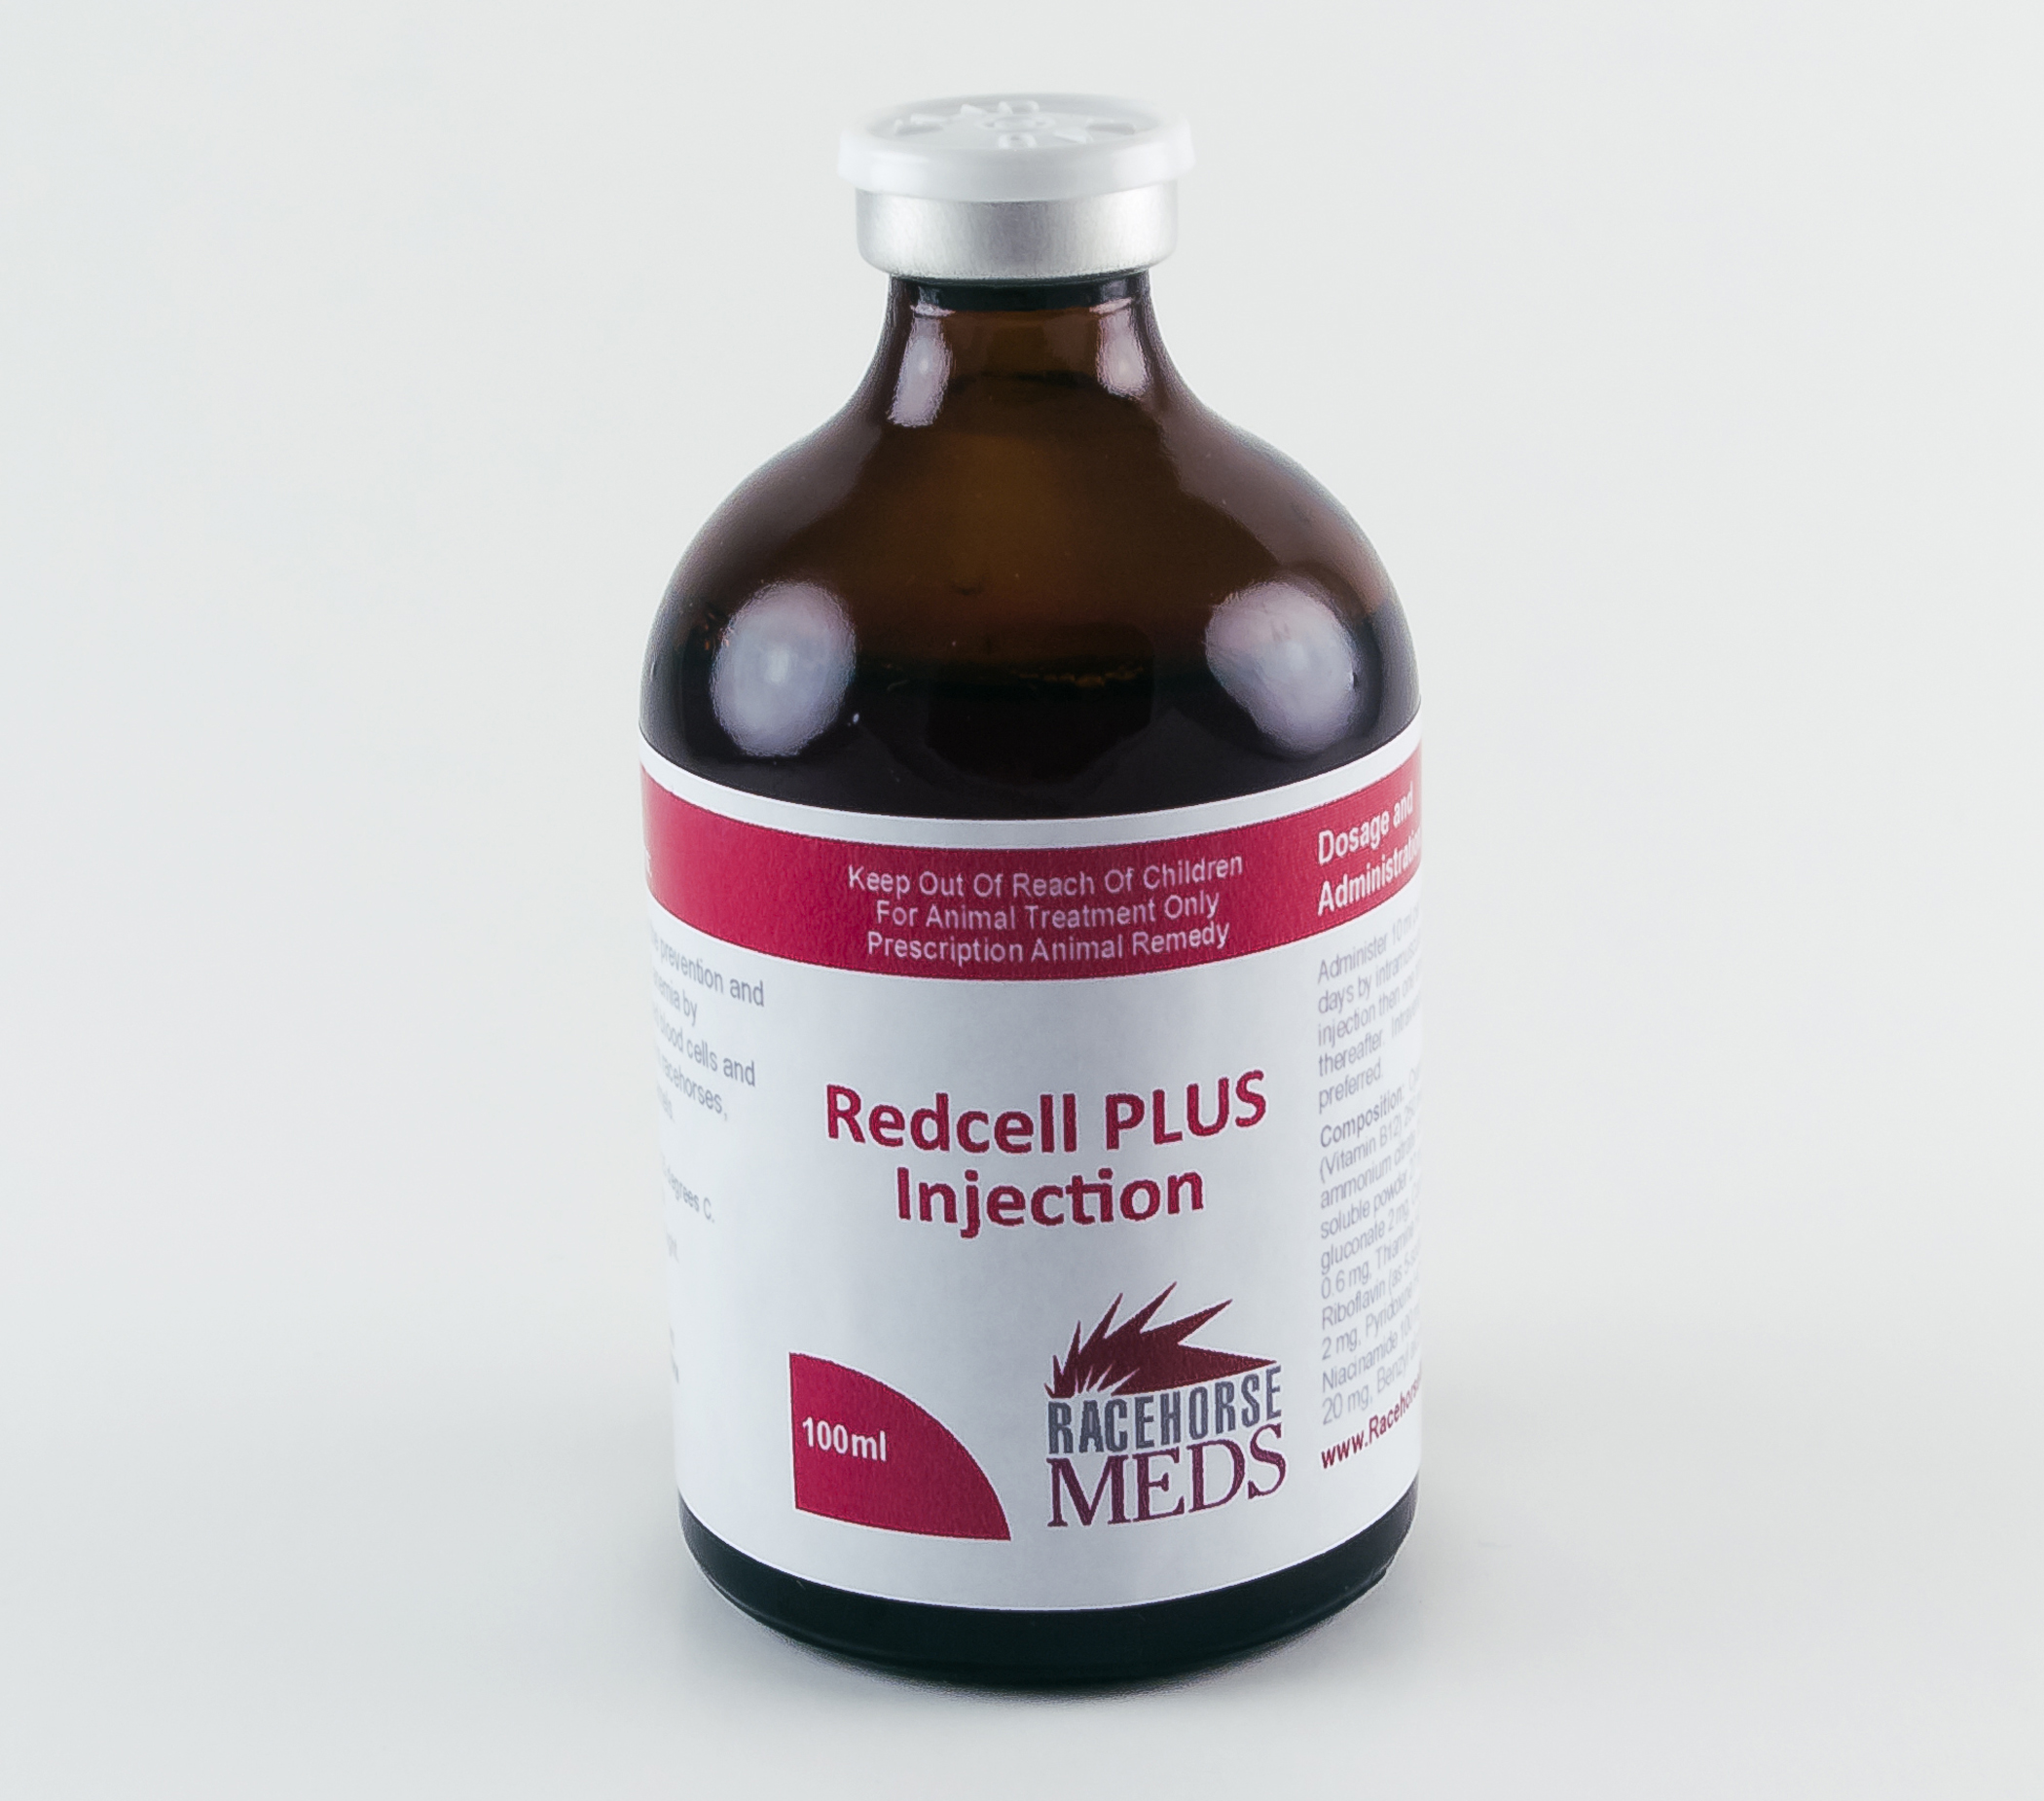 Redcell PLUS 100ml - Racehorse Meds | Racehorse Meds